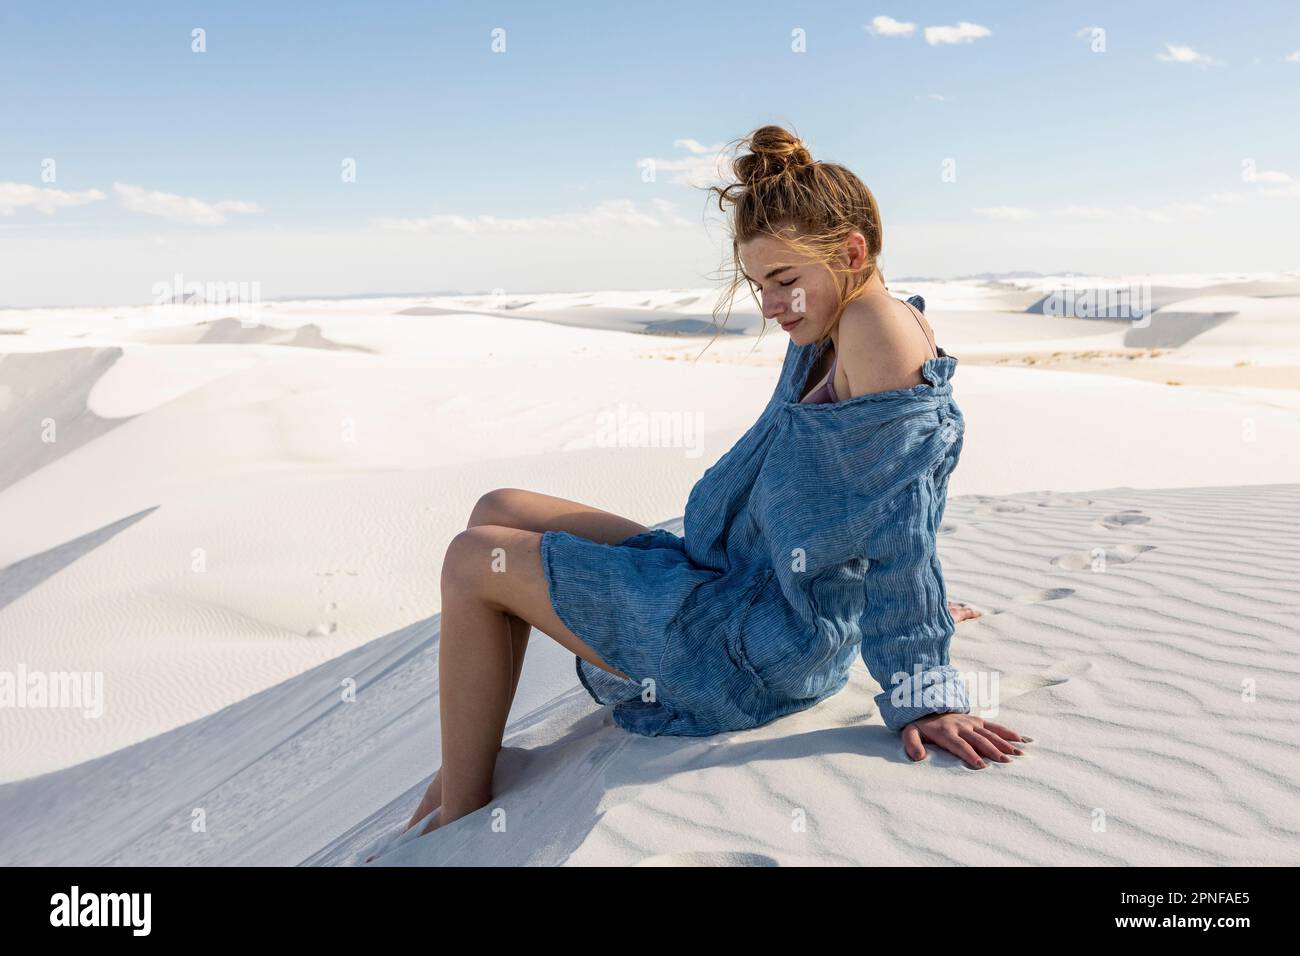 États-Unis, Nouveau-Mexique, parc national de White Sands, jeune fille assise sur le sable Banque D'Images